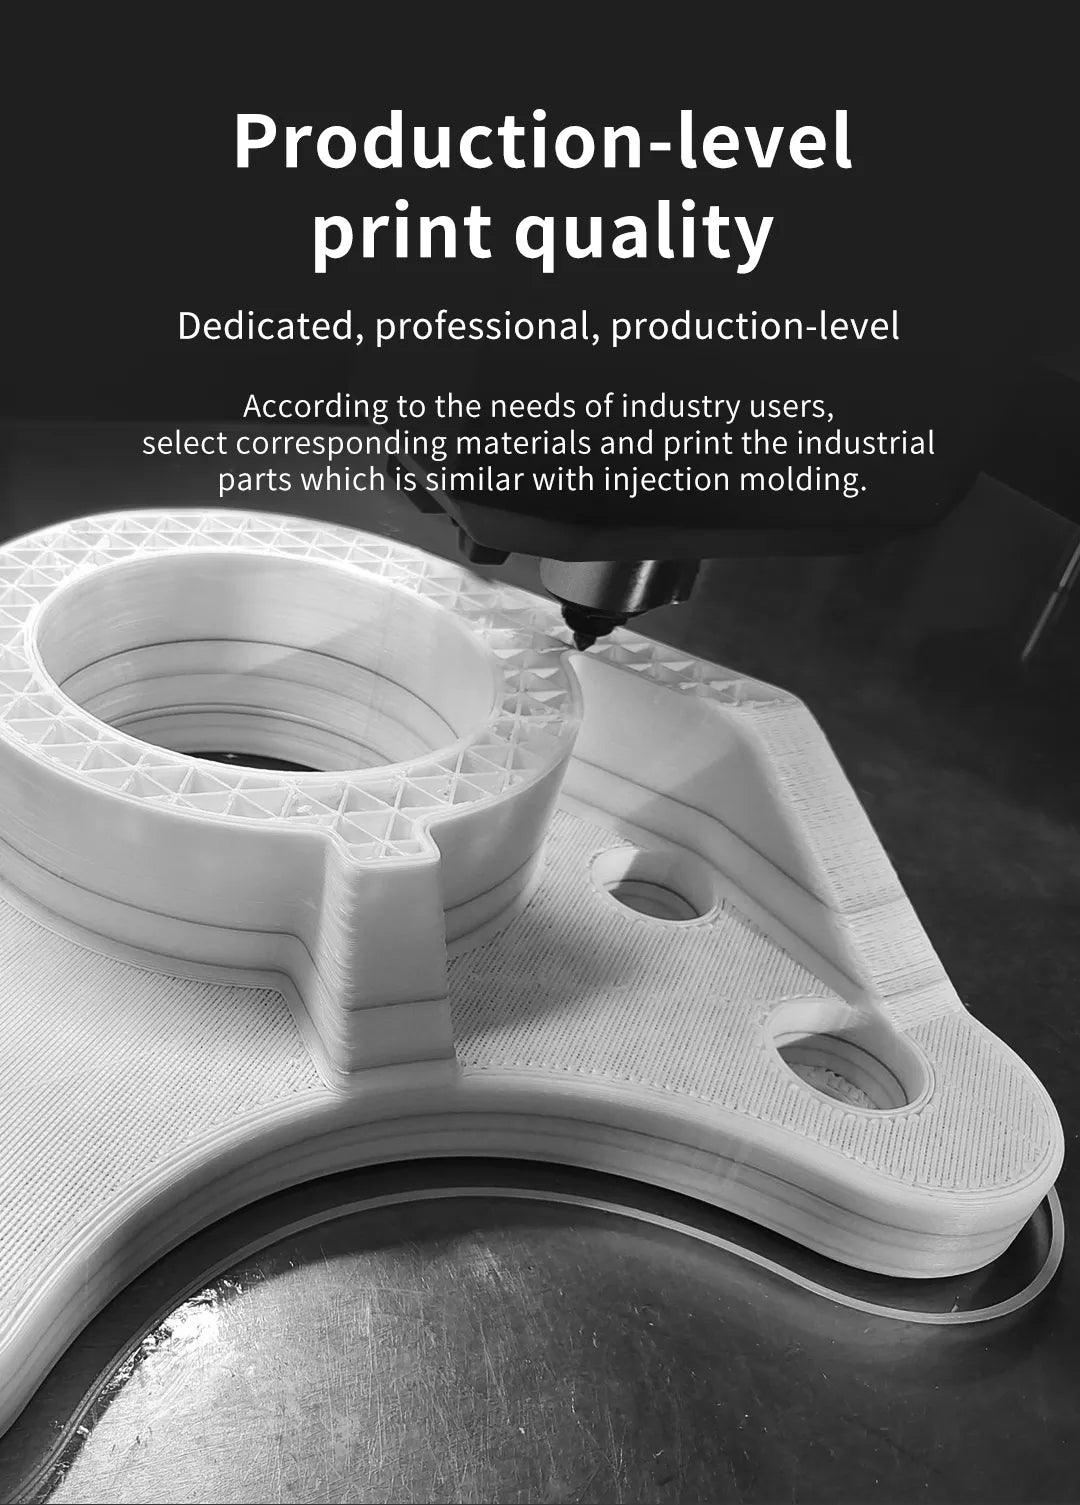 Creality Piocreat G12 large size Pellet 3D Printer better configuratious stronger quality Fast 3D PioCreat Printer 1200*1000*1000mm large size FGF 3D printer - Antinsky3d